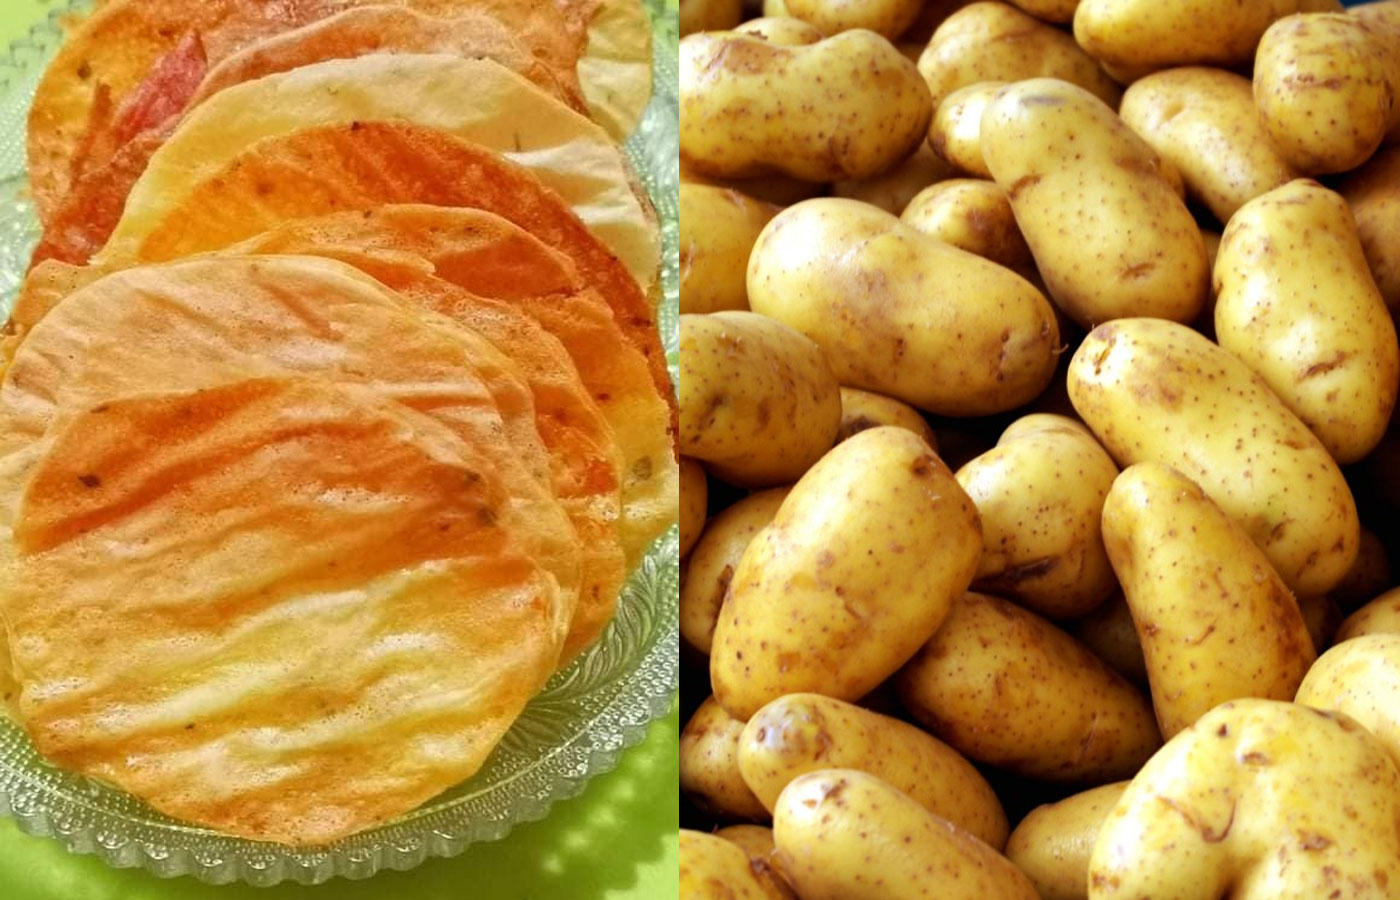 Πατάτες Τραγάνες με Κρεμμύδι Χωρίς Λάδι - Υγιεινό σνακ χωρίς τύψεις για τις θερμίδες